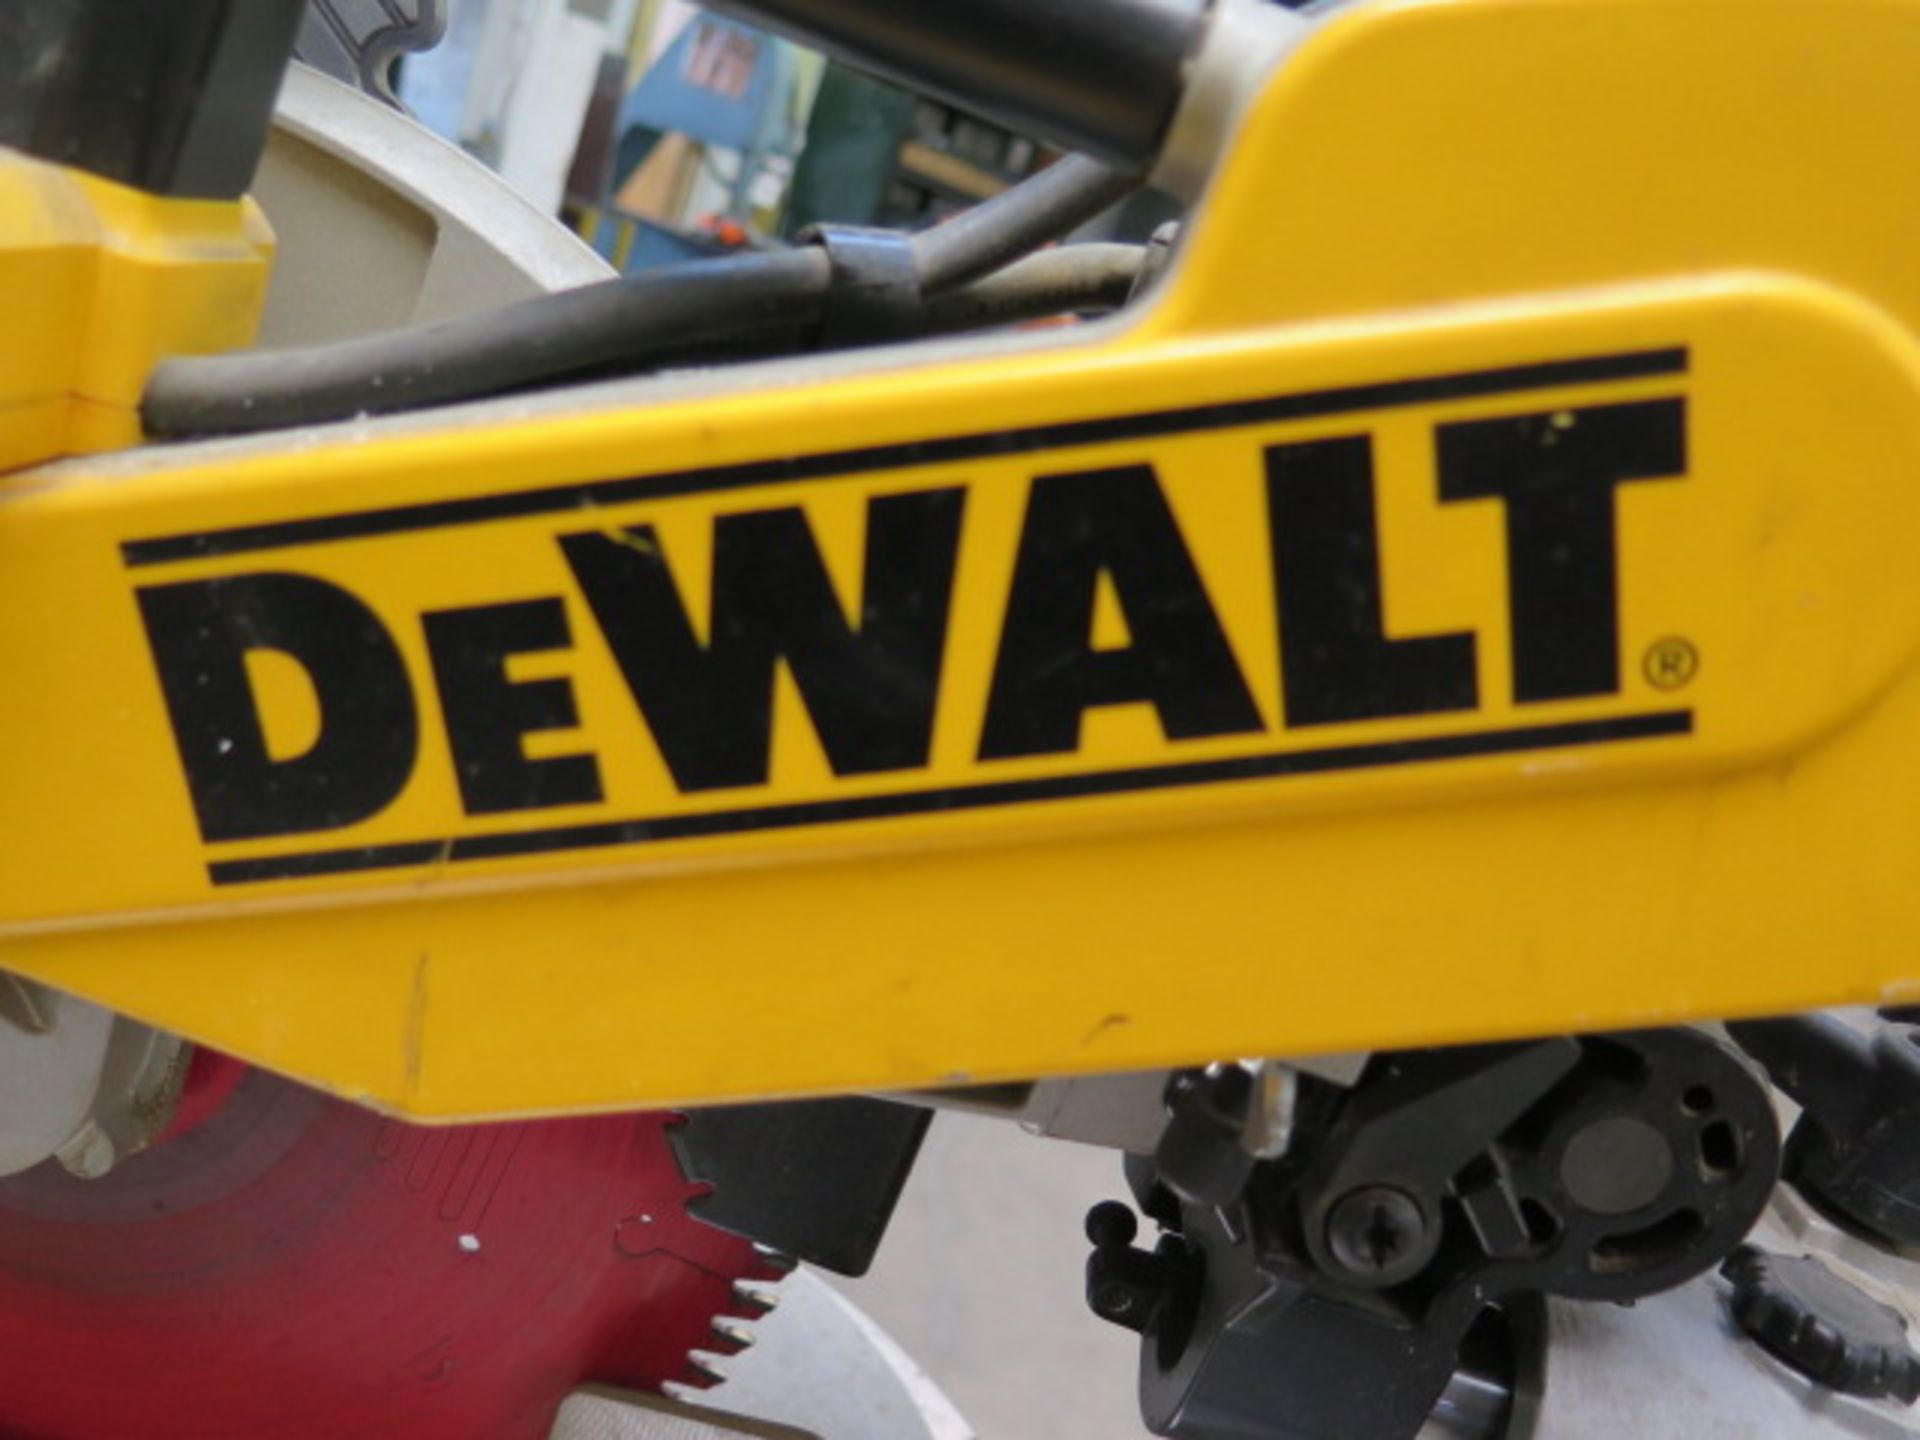 DeWalt DW718 12" Double Bevel Sliding Compound Miter Saw (SOLD AS-IS - NO WARRANTY) - Bild 6 aus 7